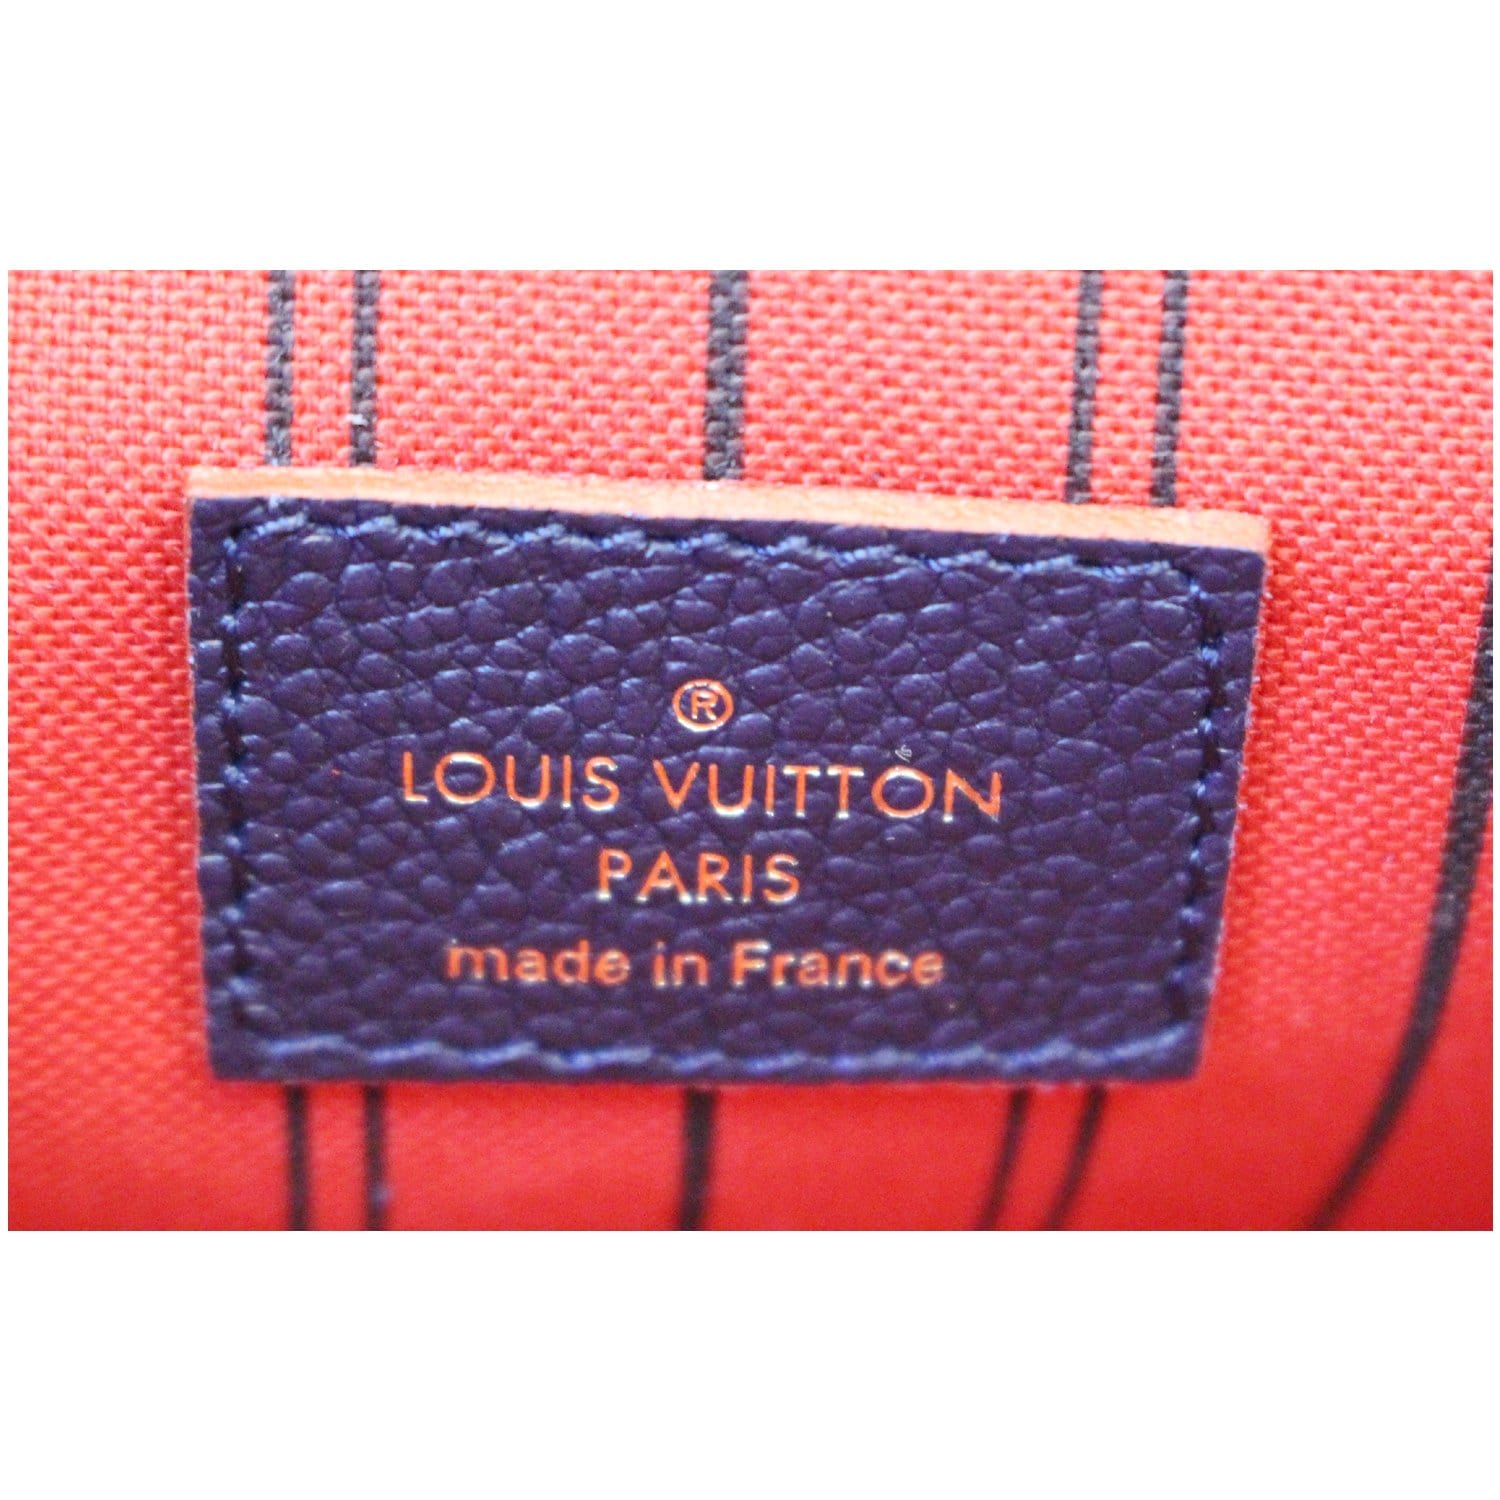 Louis Vuitton Empreinte Pochette Metis Marine Rouge – Coco